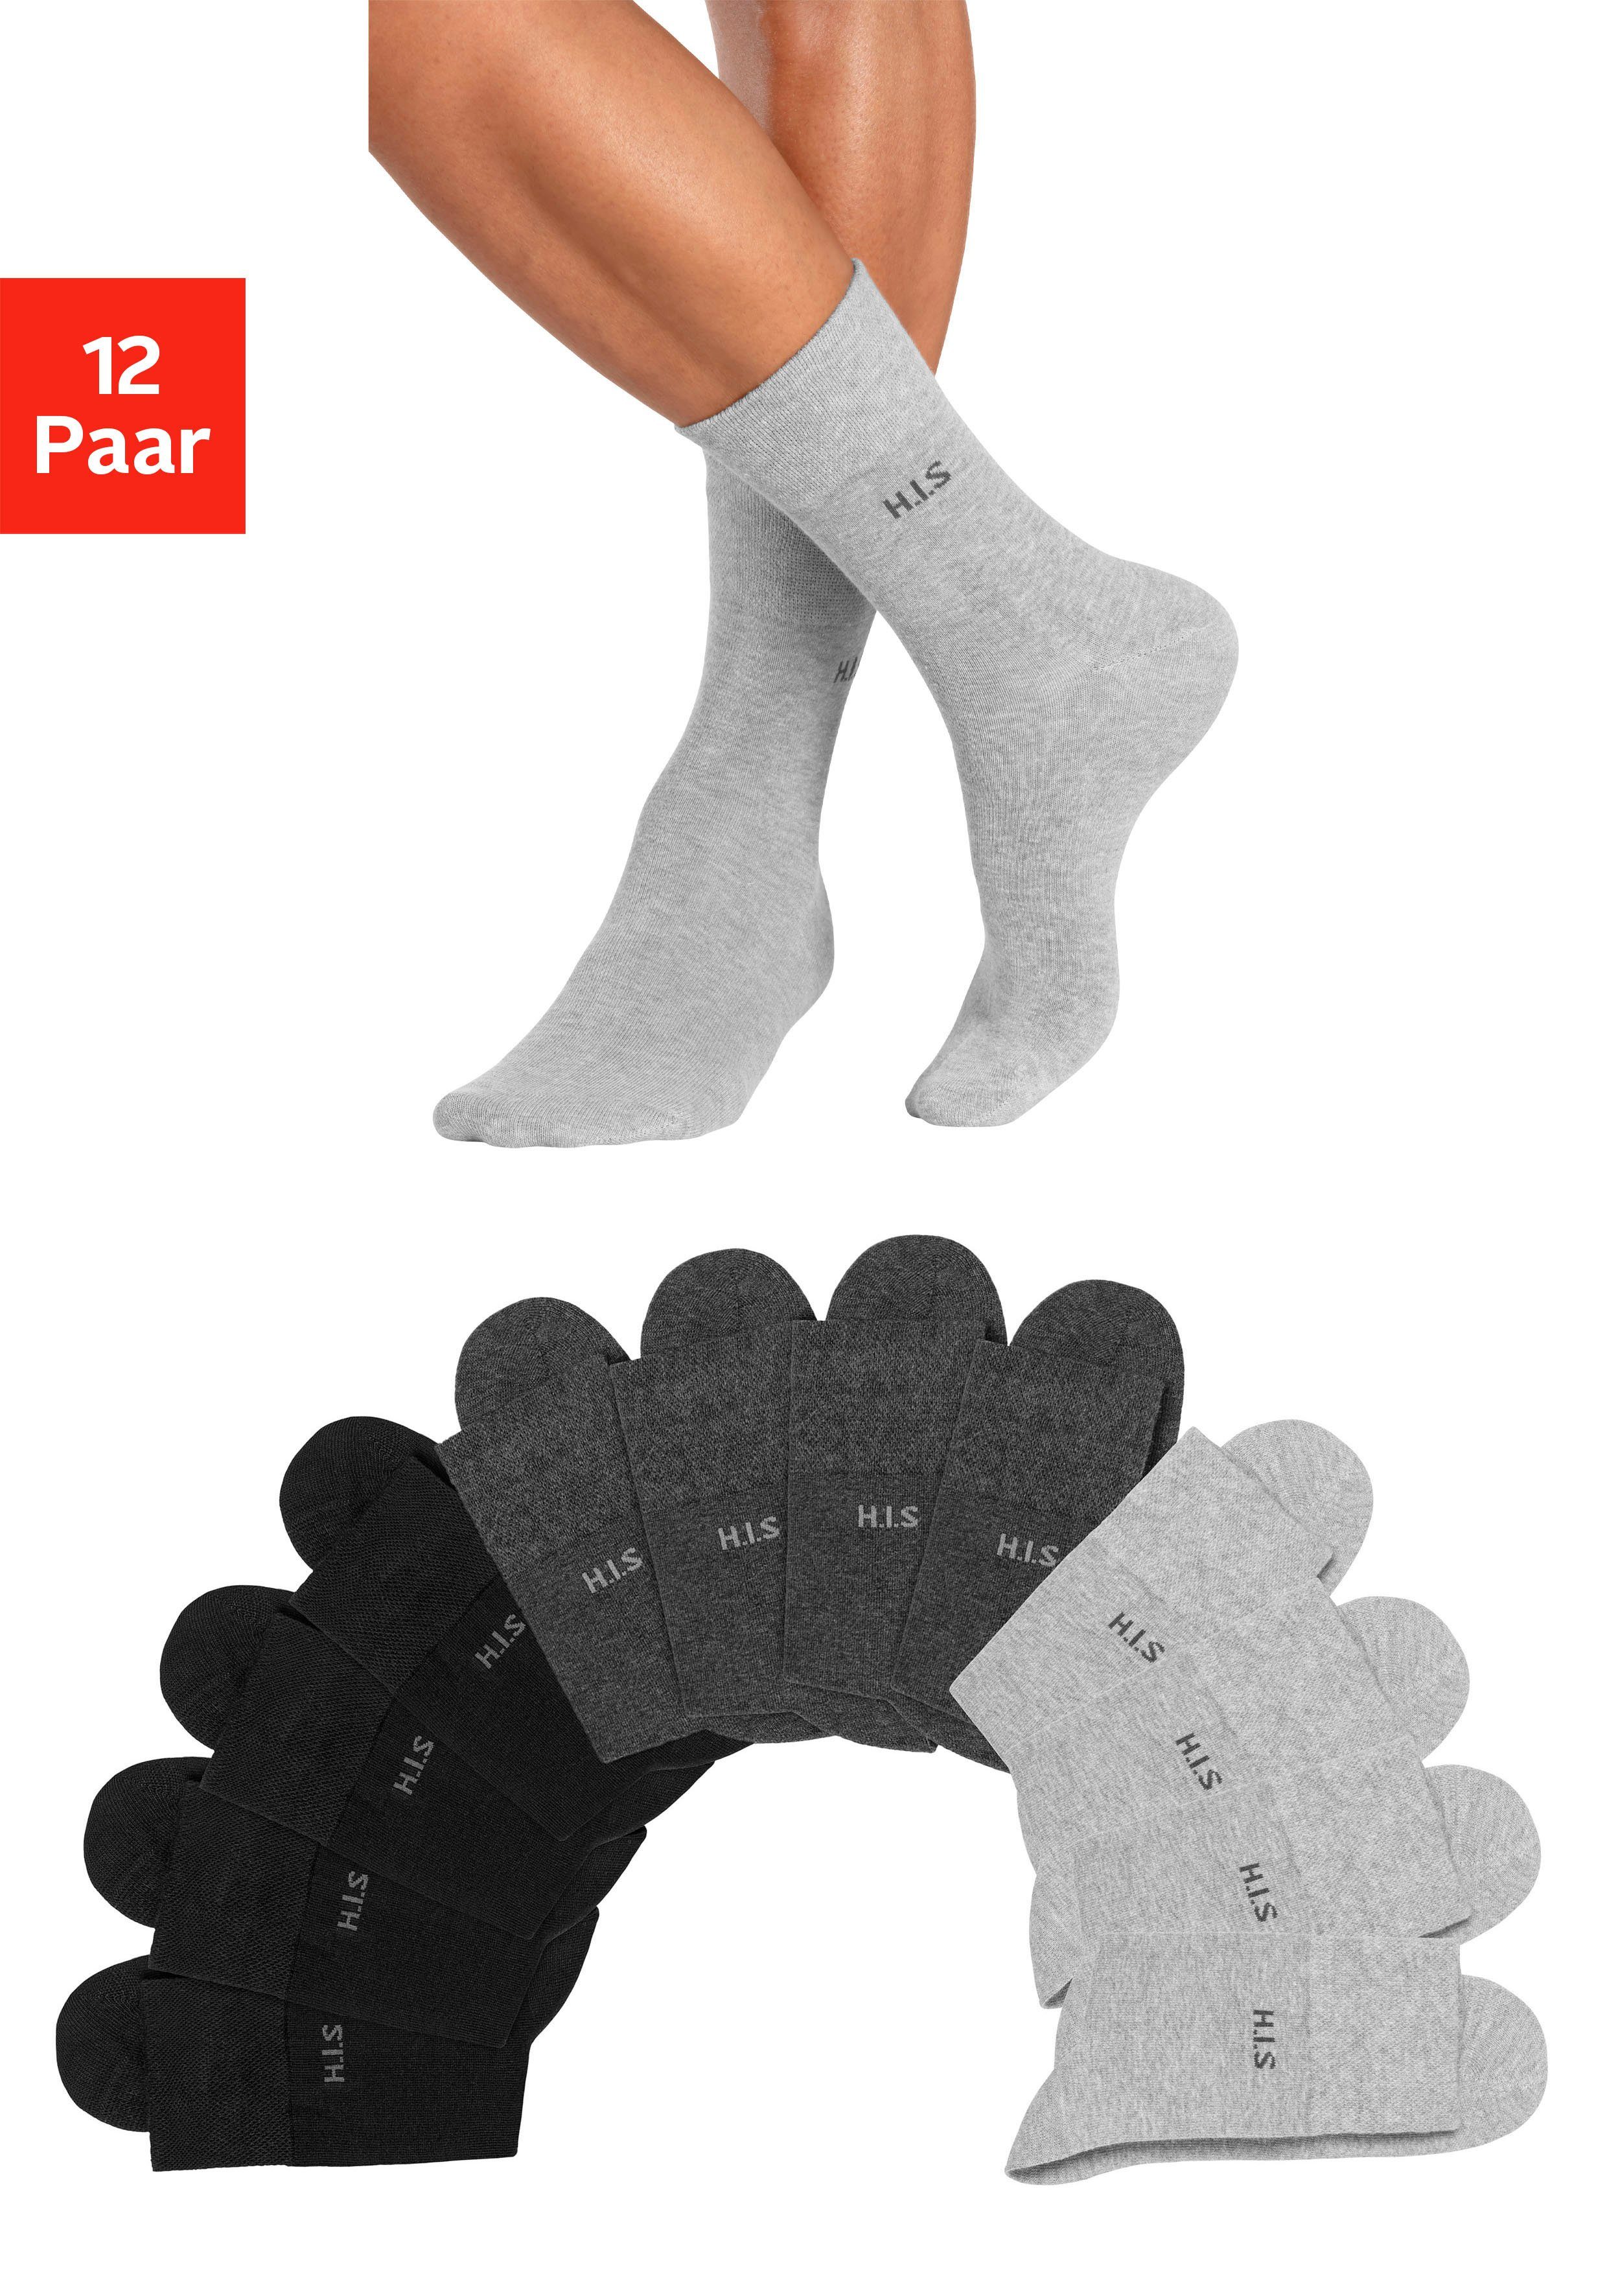 H.I.S Socken (Packung, 12-Paar) ohne einschneidendes Gummi 4x schwarz, 4x anthrazit-meliert, 4x grau-meliert | Lange Socken